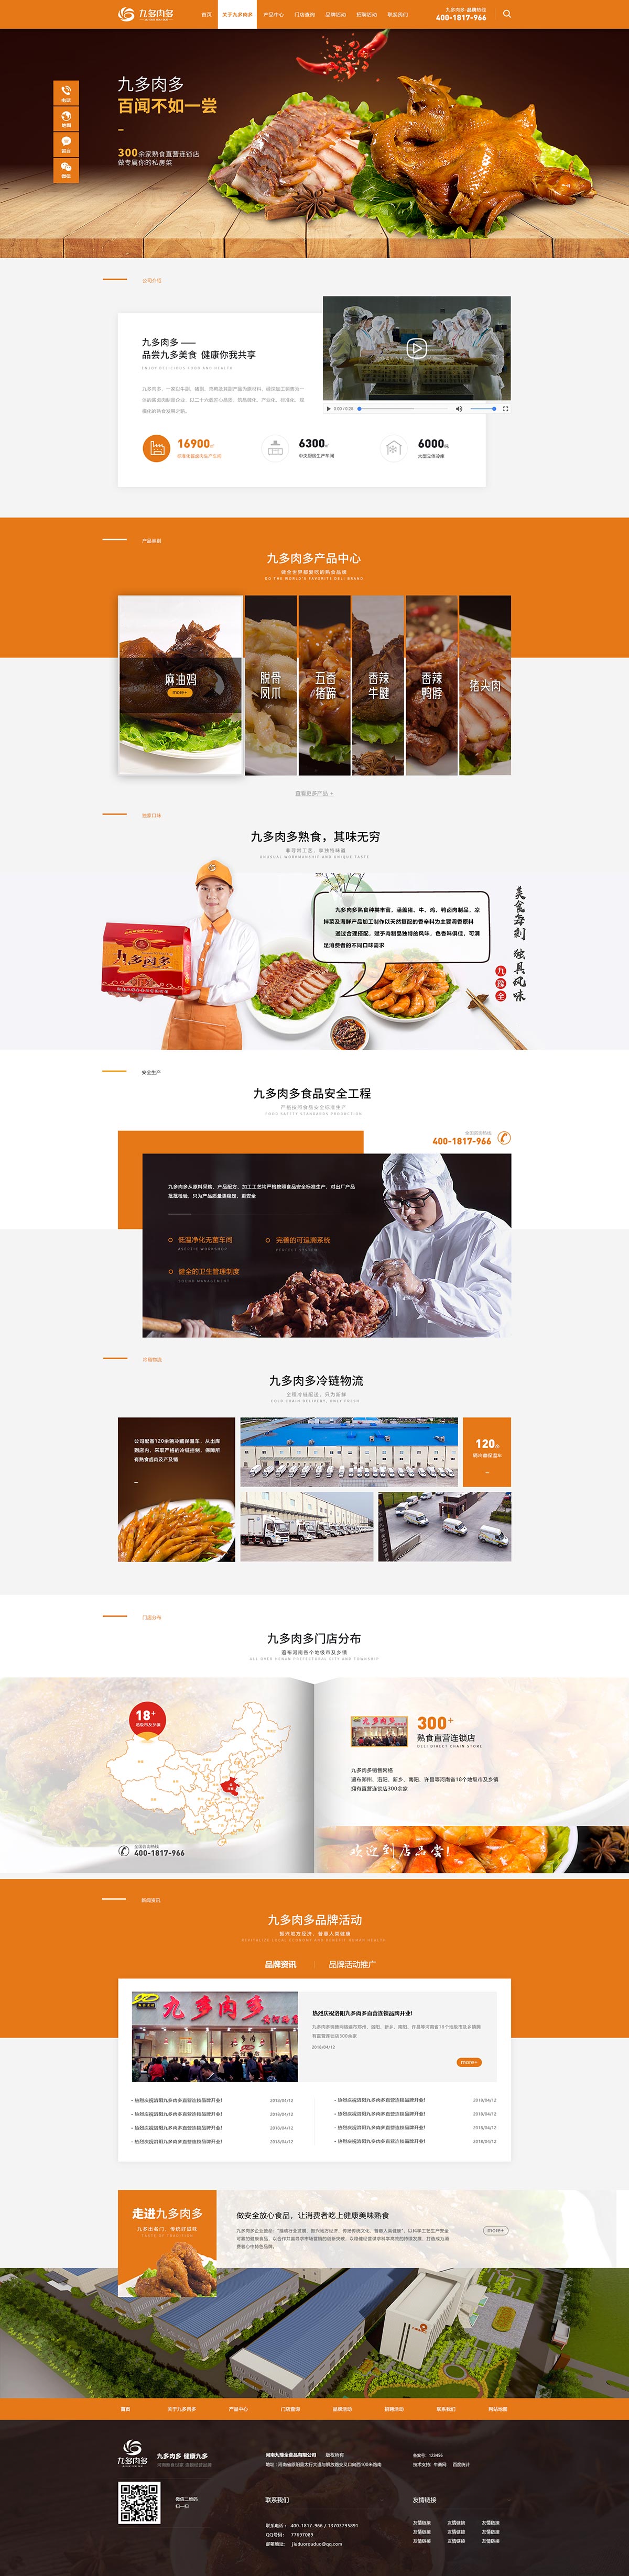 九多肉多熟食-营销型网站案例展示